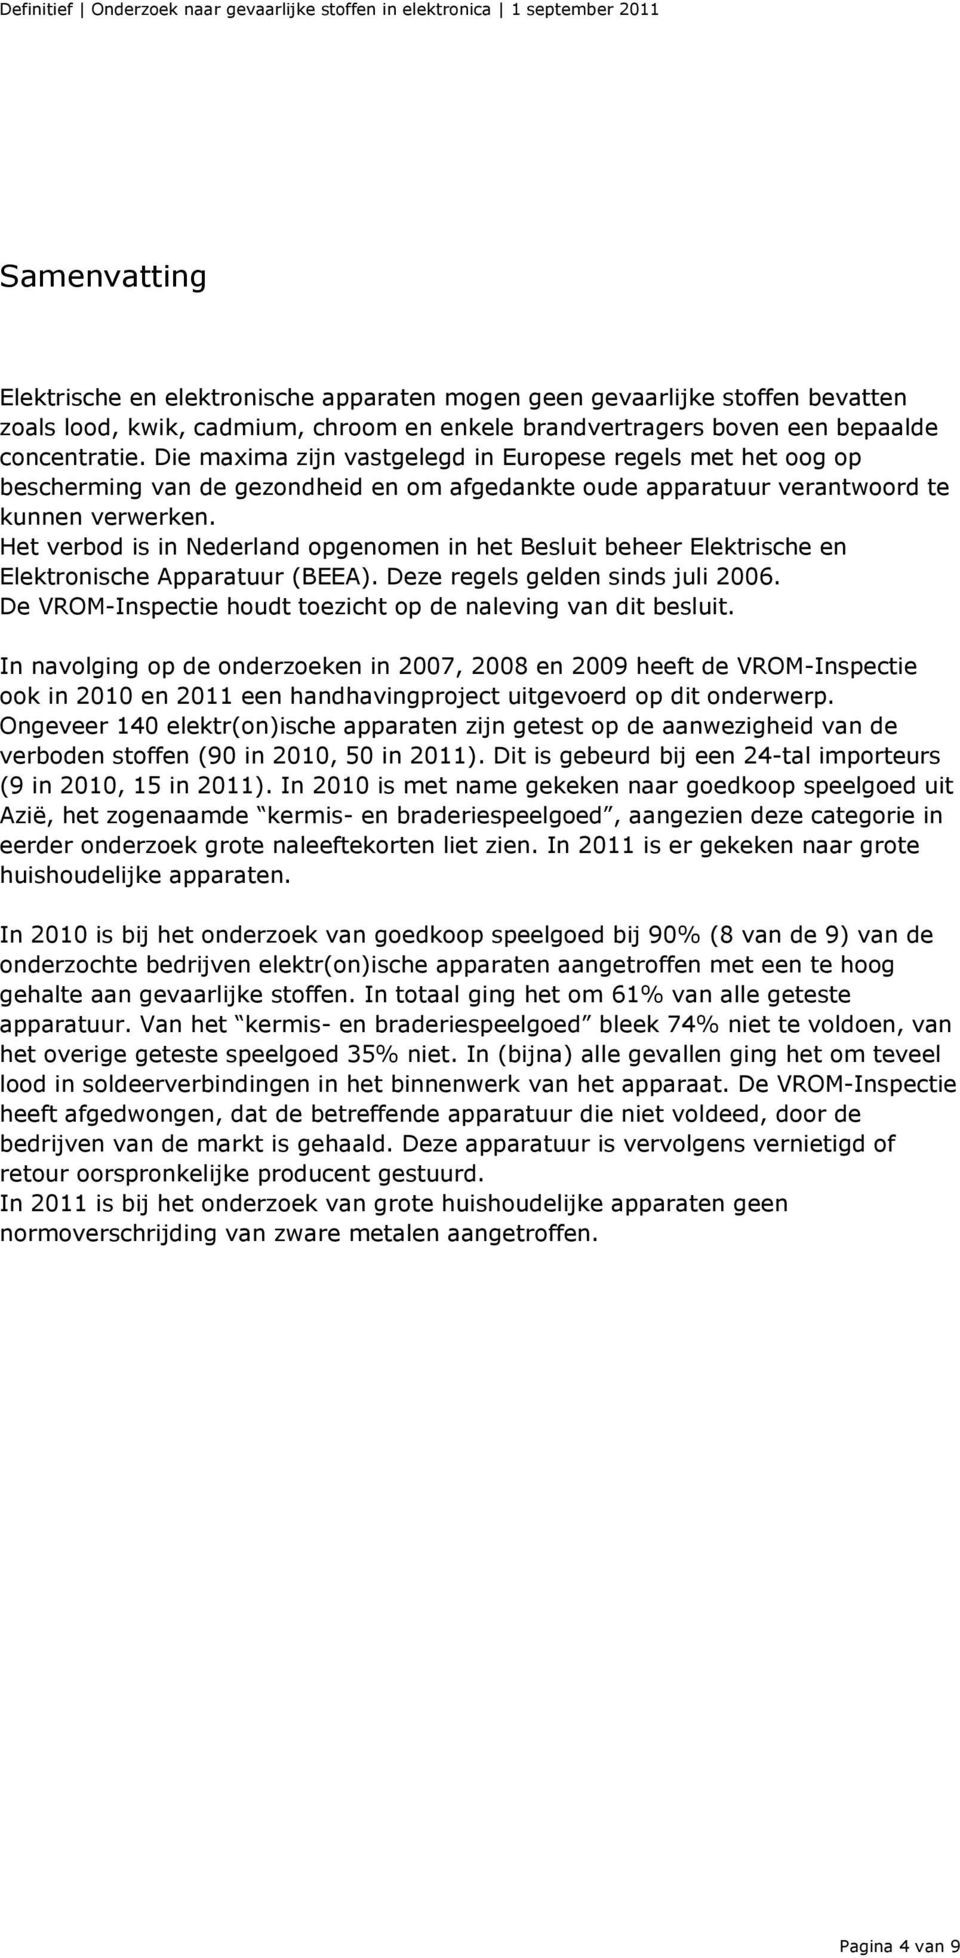 Het verbod is in Nederland opgenomen in het Besluit beheer Elektrische en Elektronische Apparatuur (BEEA). Deze regels gelden sinds juli 2006.